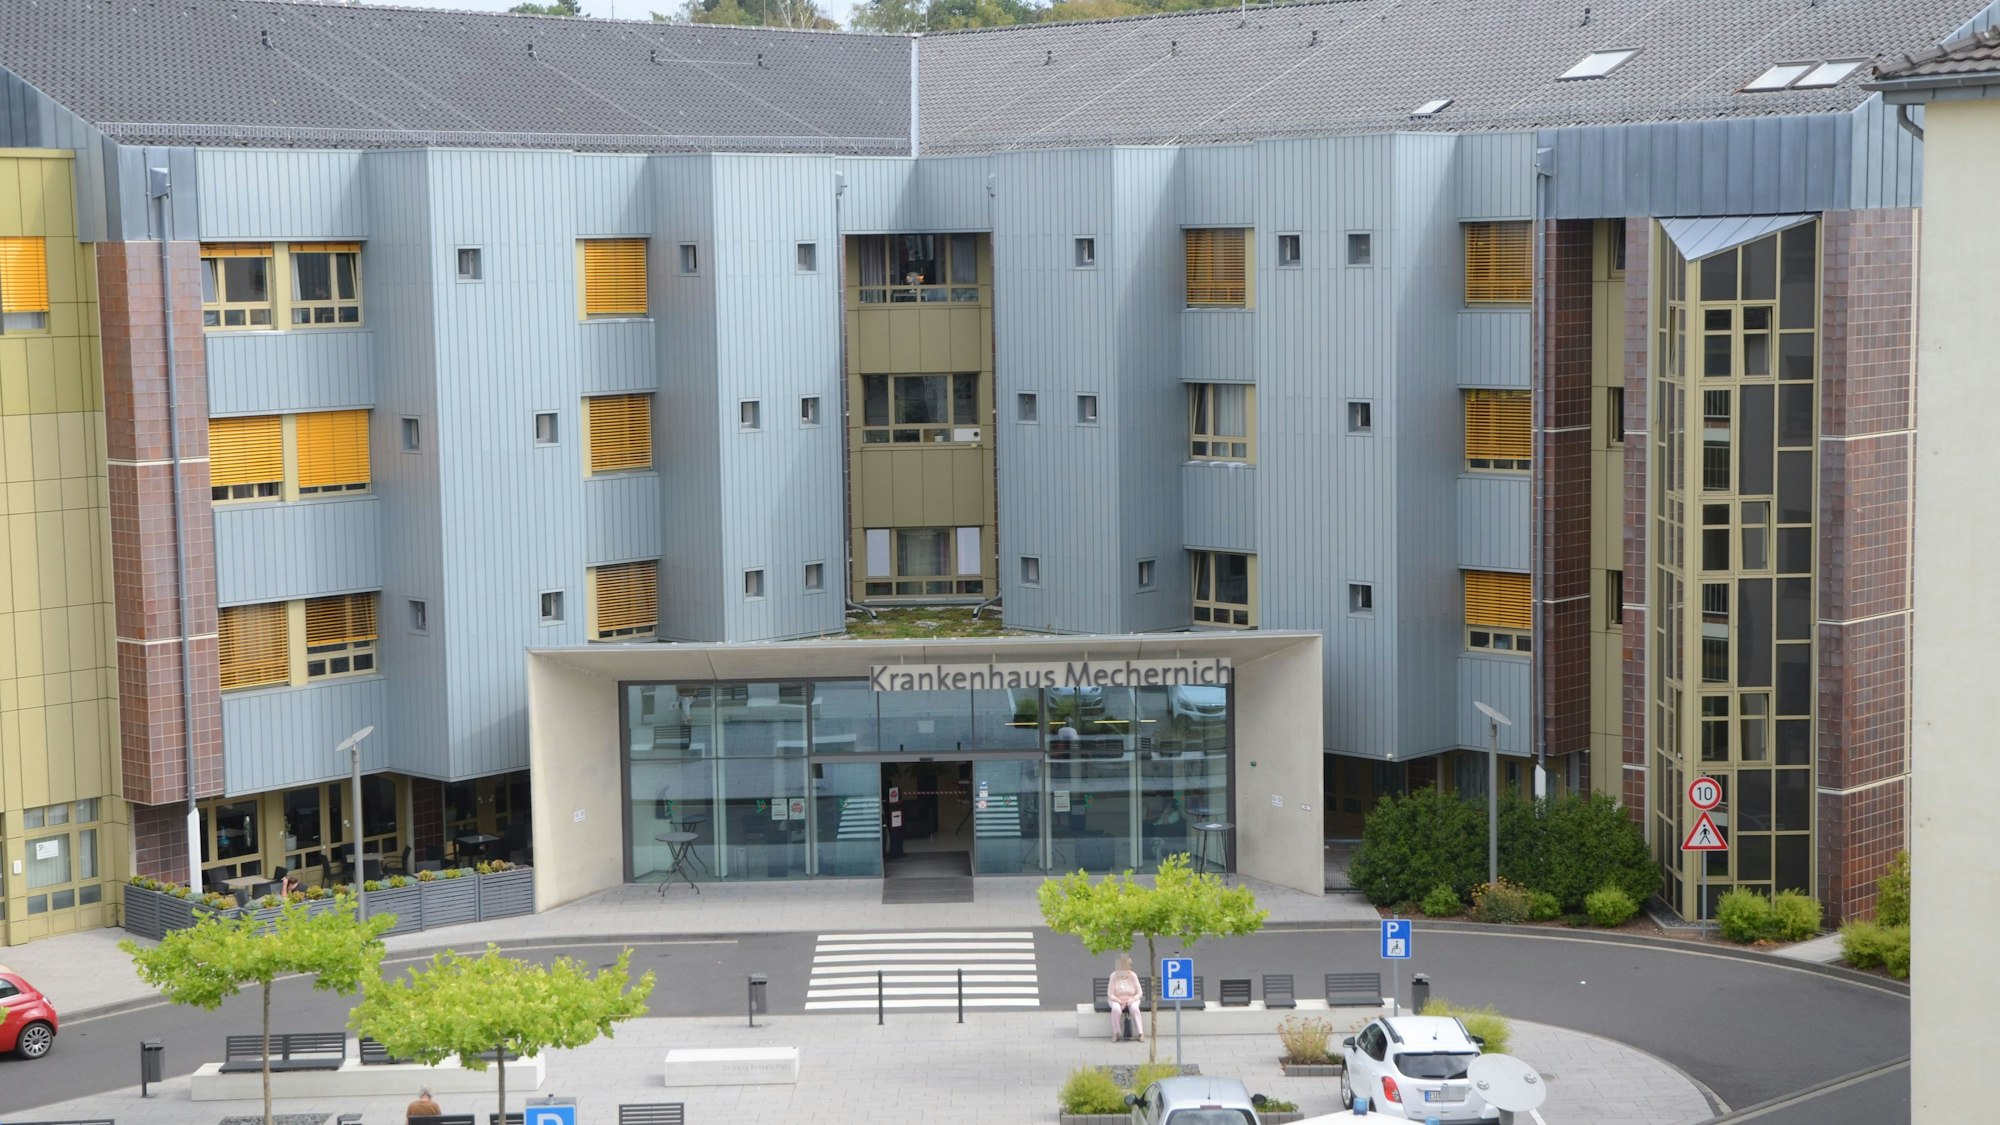 Das Bild zeigt die Front des Kreiskrankenhauses in Mechernich mit dem Haupteingang.